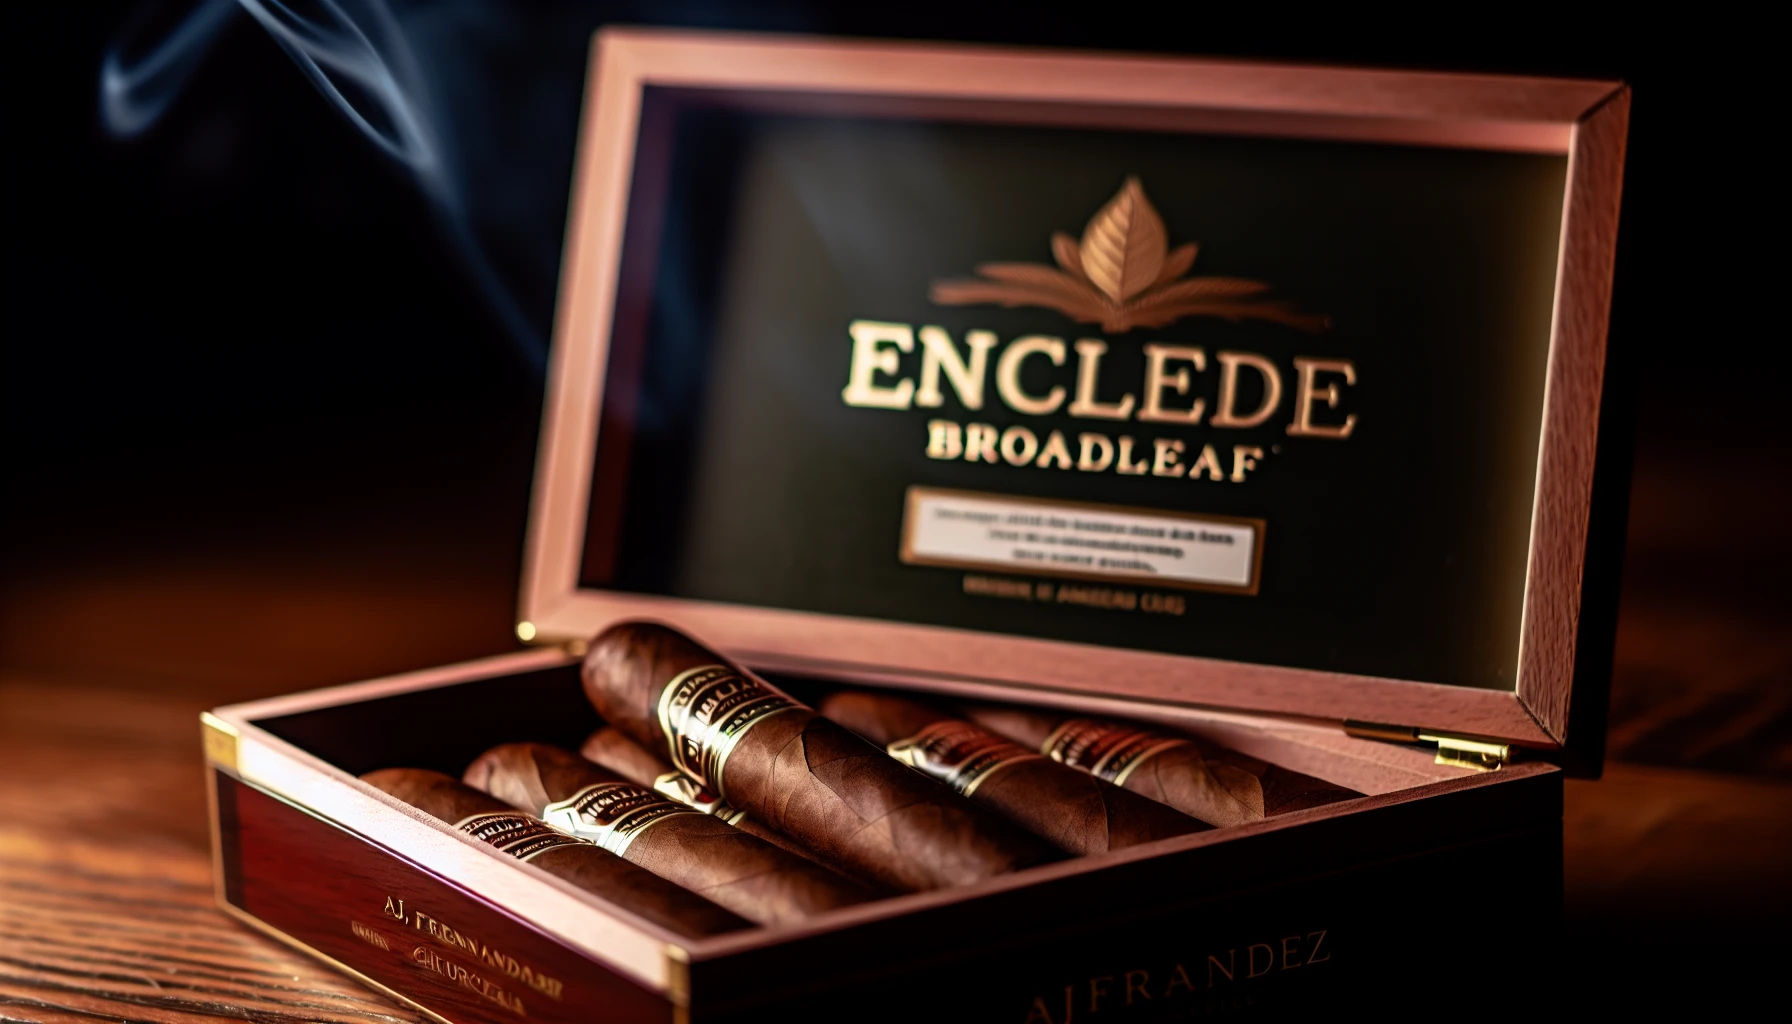 A box of Enclave Broadleaf by AJ Fernandez Churchill cigars